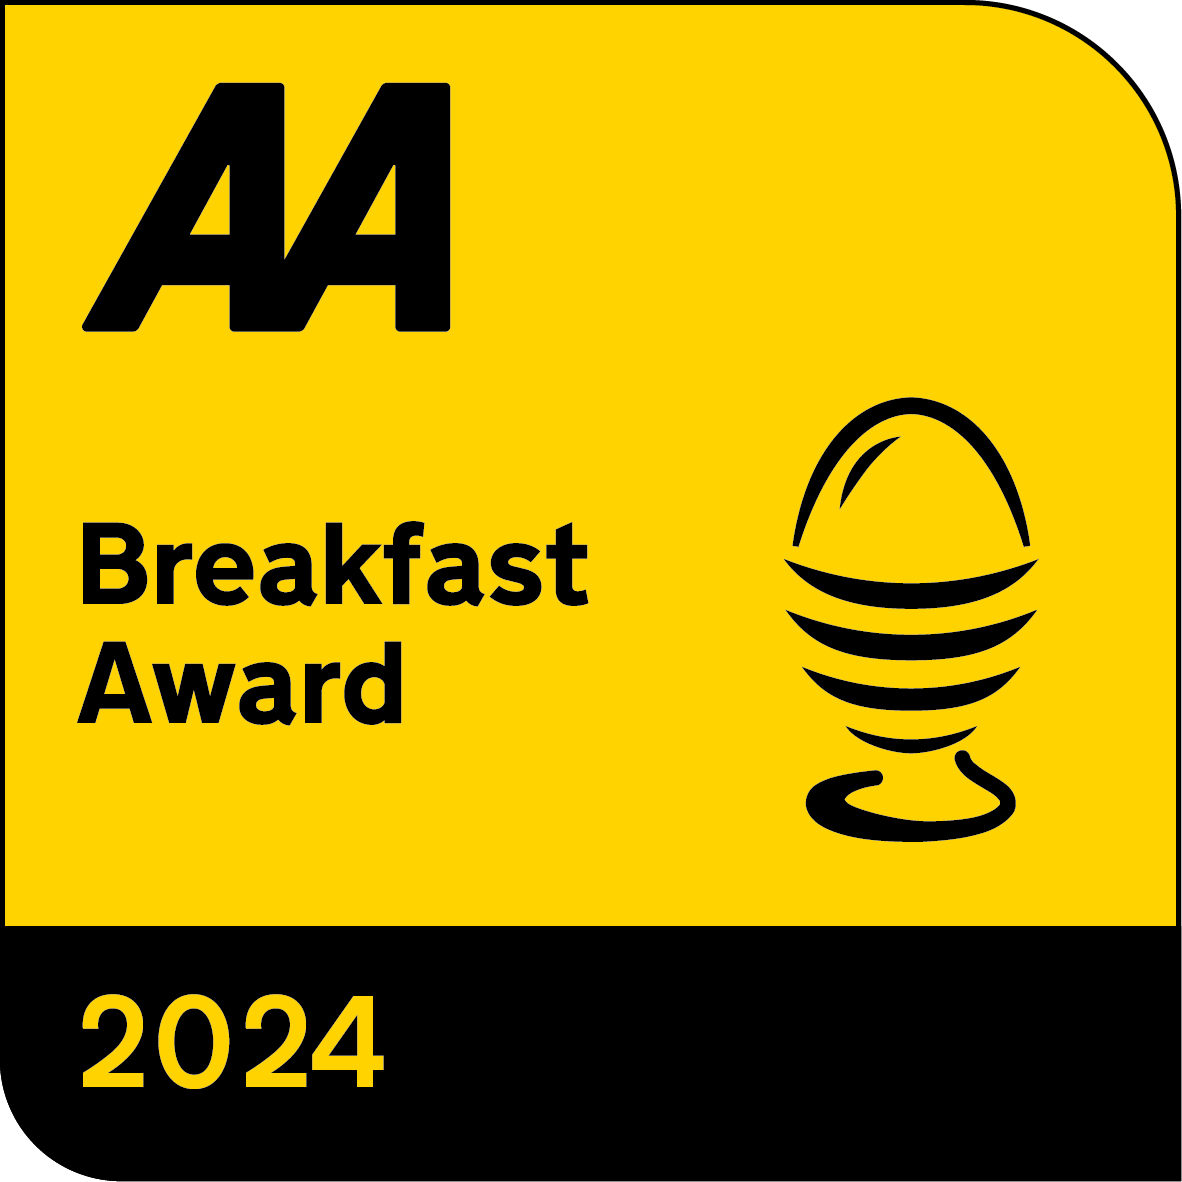 AA-BreakfastAward-2024